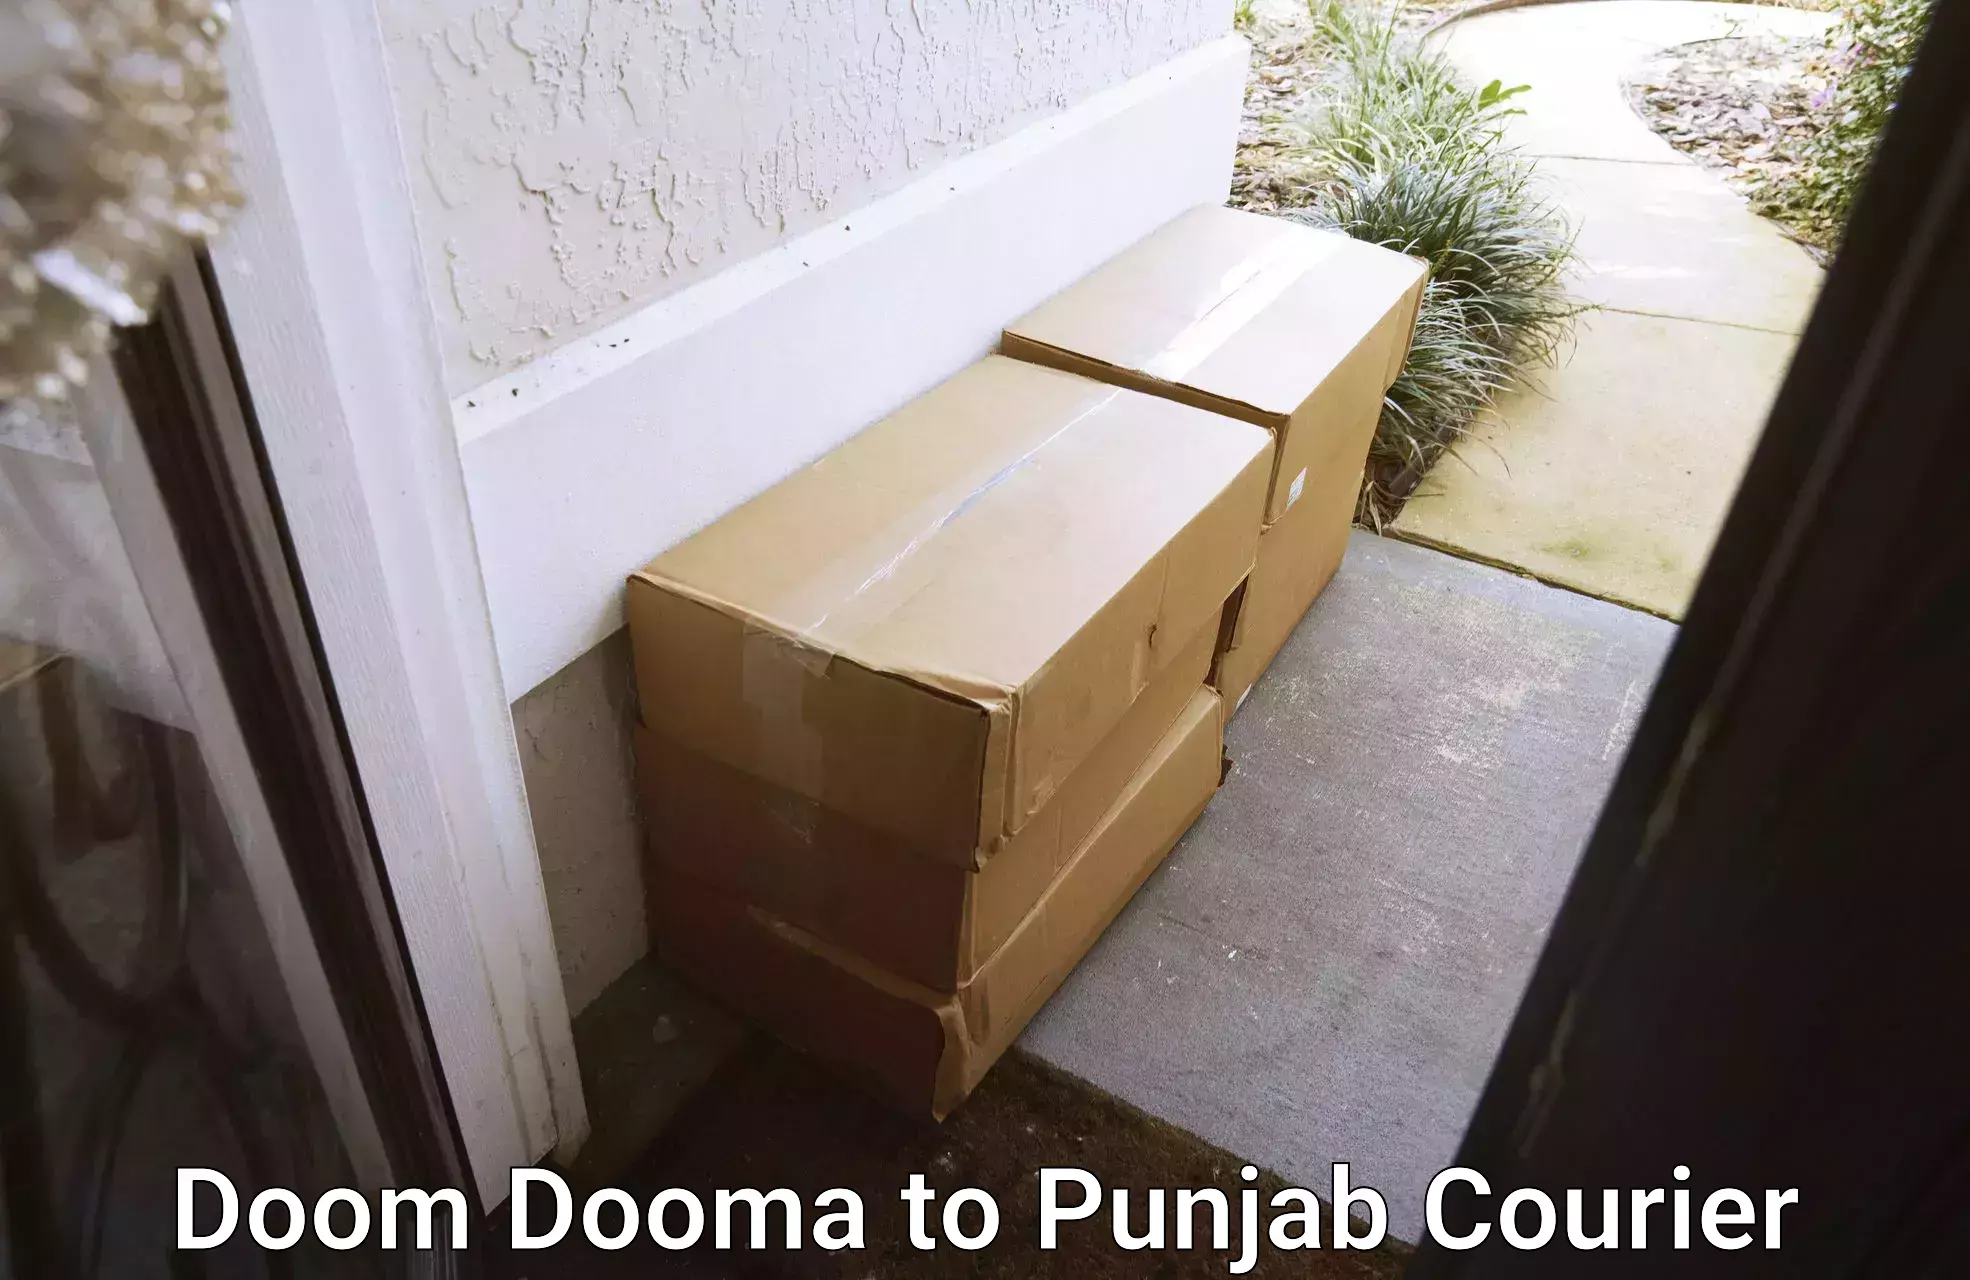 Comprehensive parcel tracking Doom Dooma to Punjab